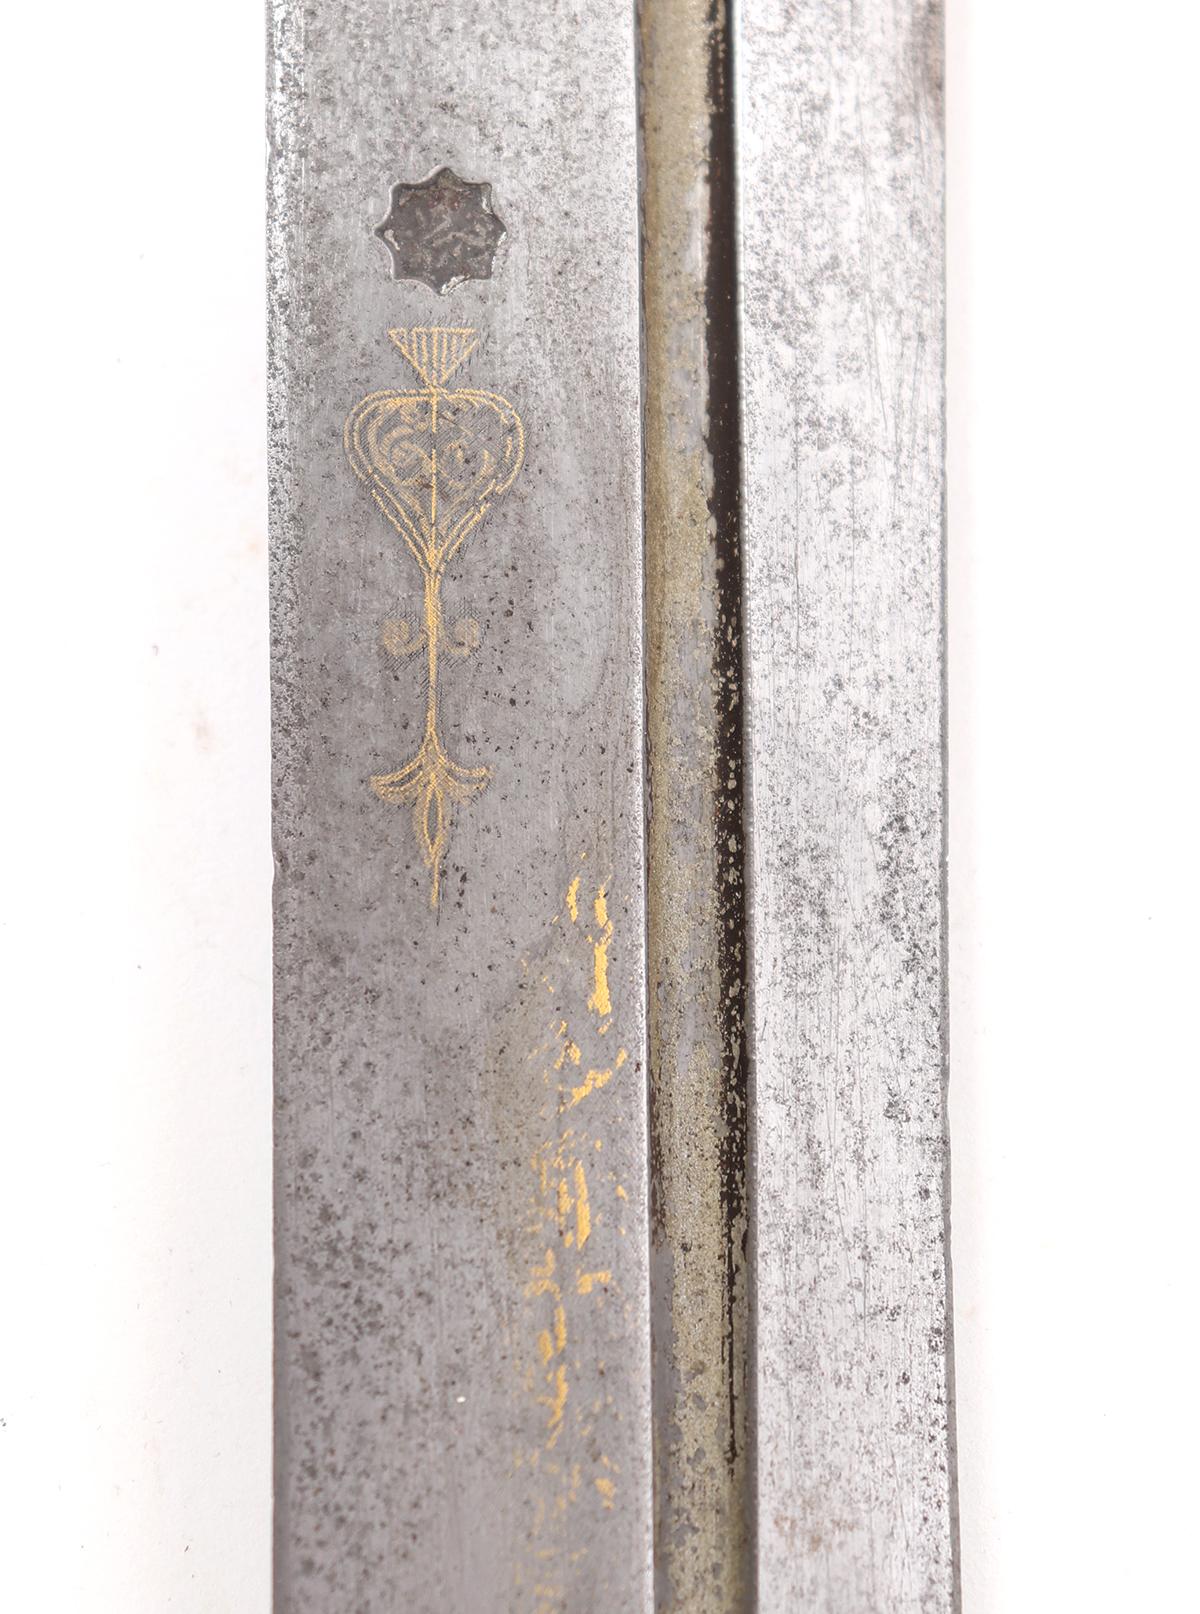 Big Gold Inlaid Kindjal or Quadra Dagger